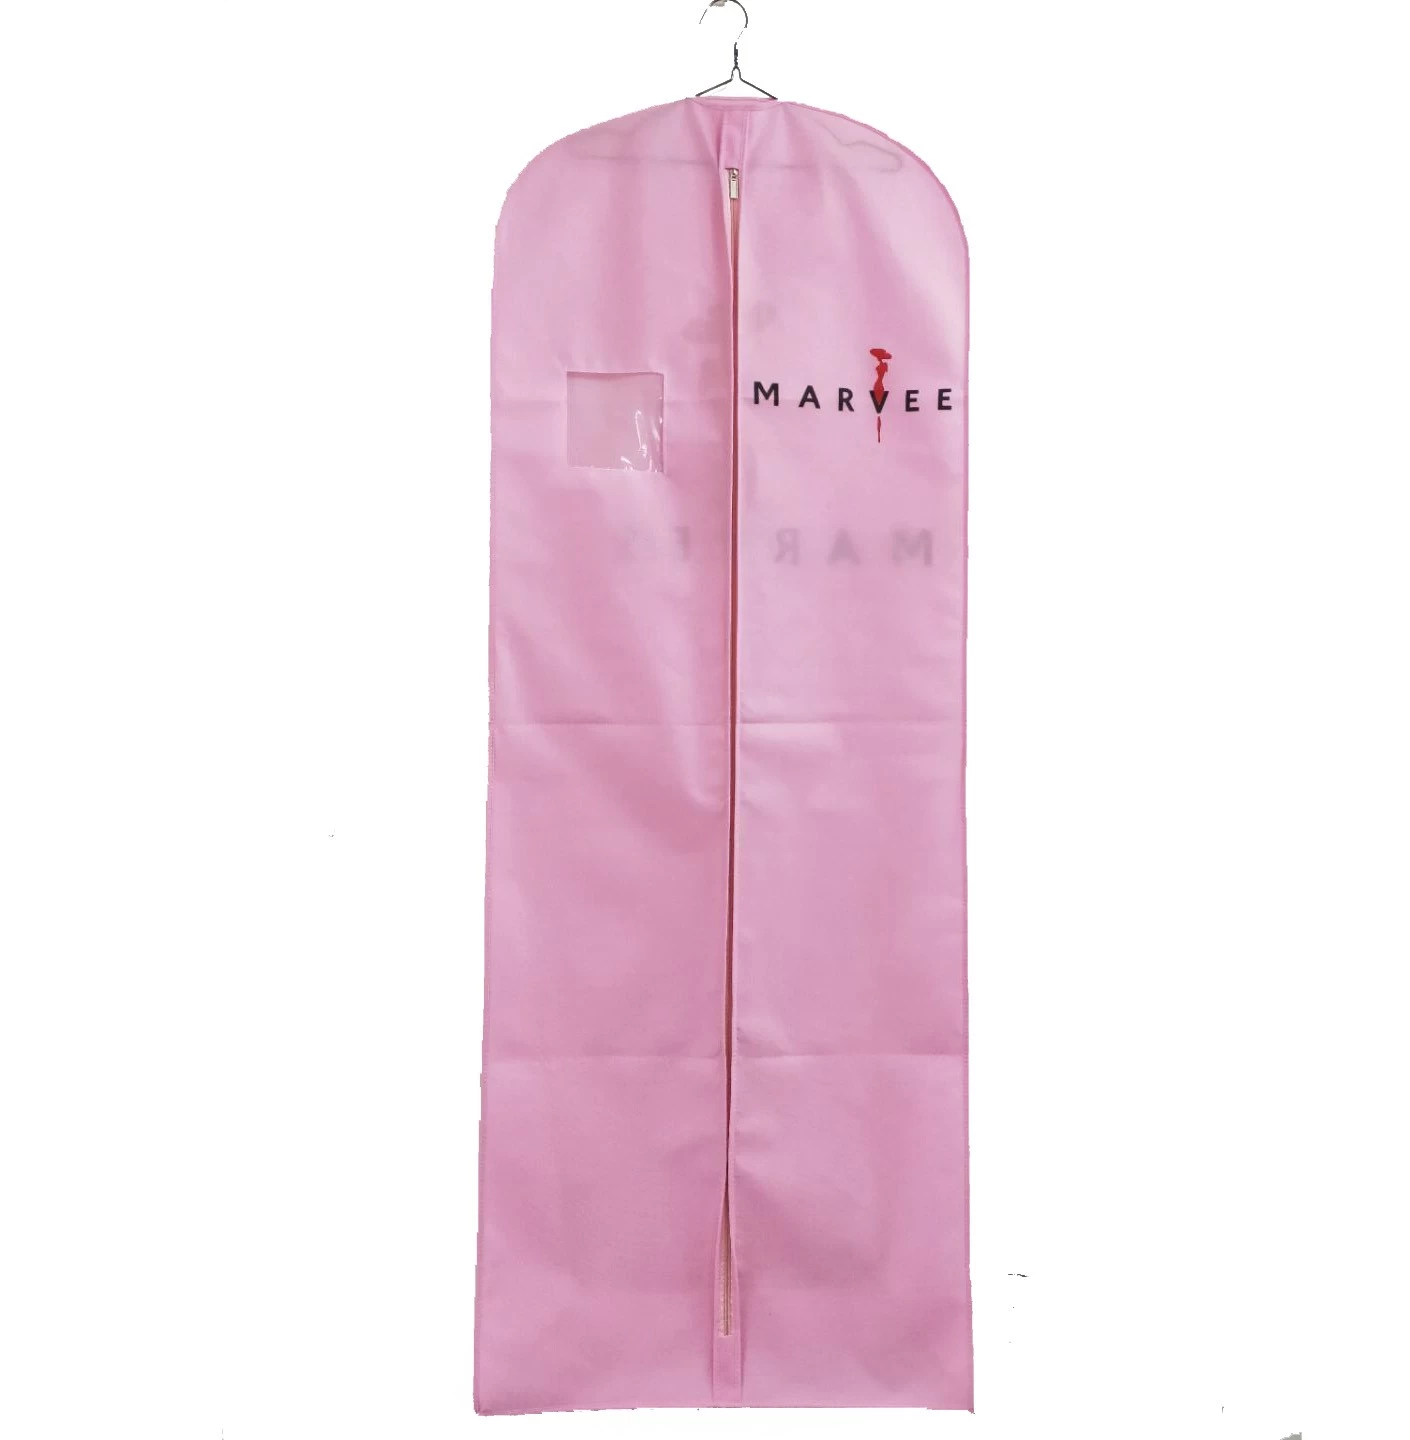 ประเทศจีน ถุงผ้าไม่ทอสีชมพูอบอุ่นถุงคลุมชุดแต่งงานโลโก้ที่กำหนดเอง ผู้ผลิต